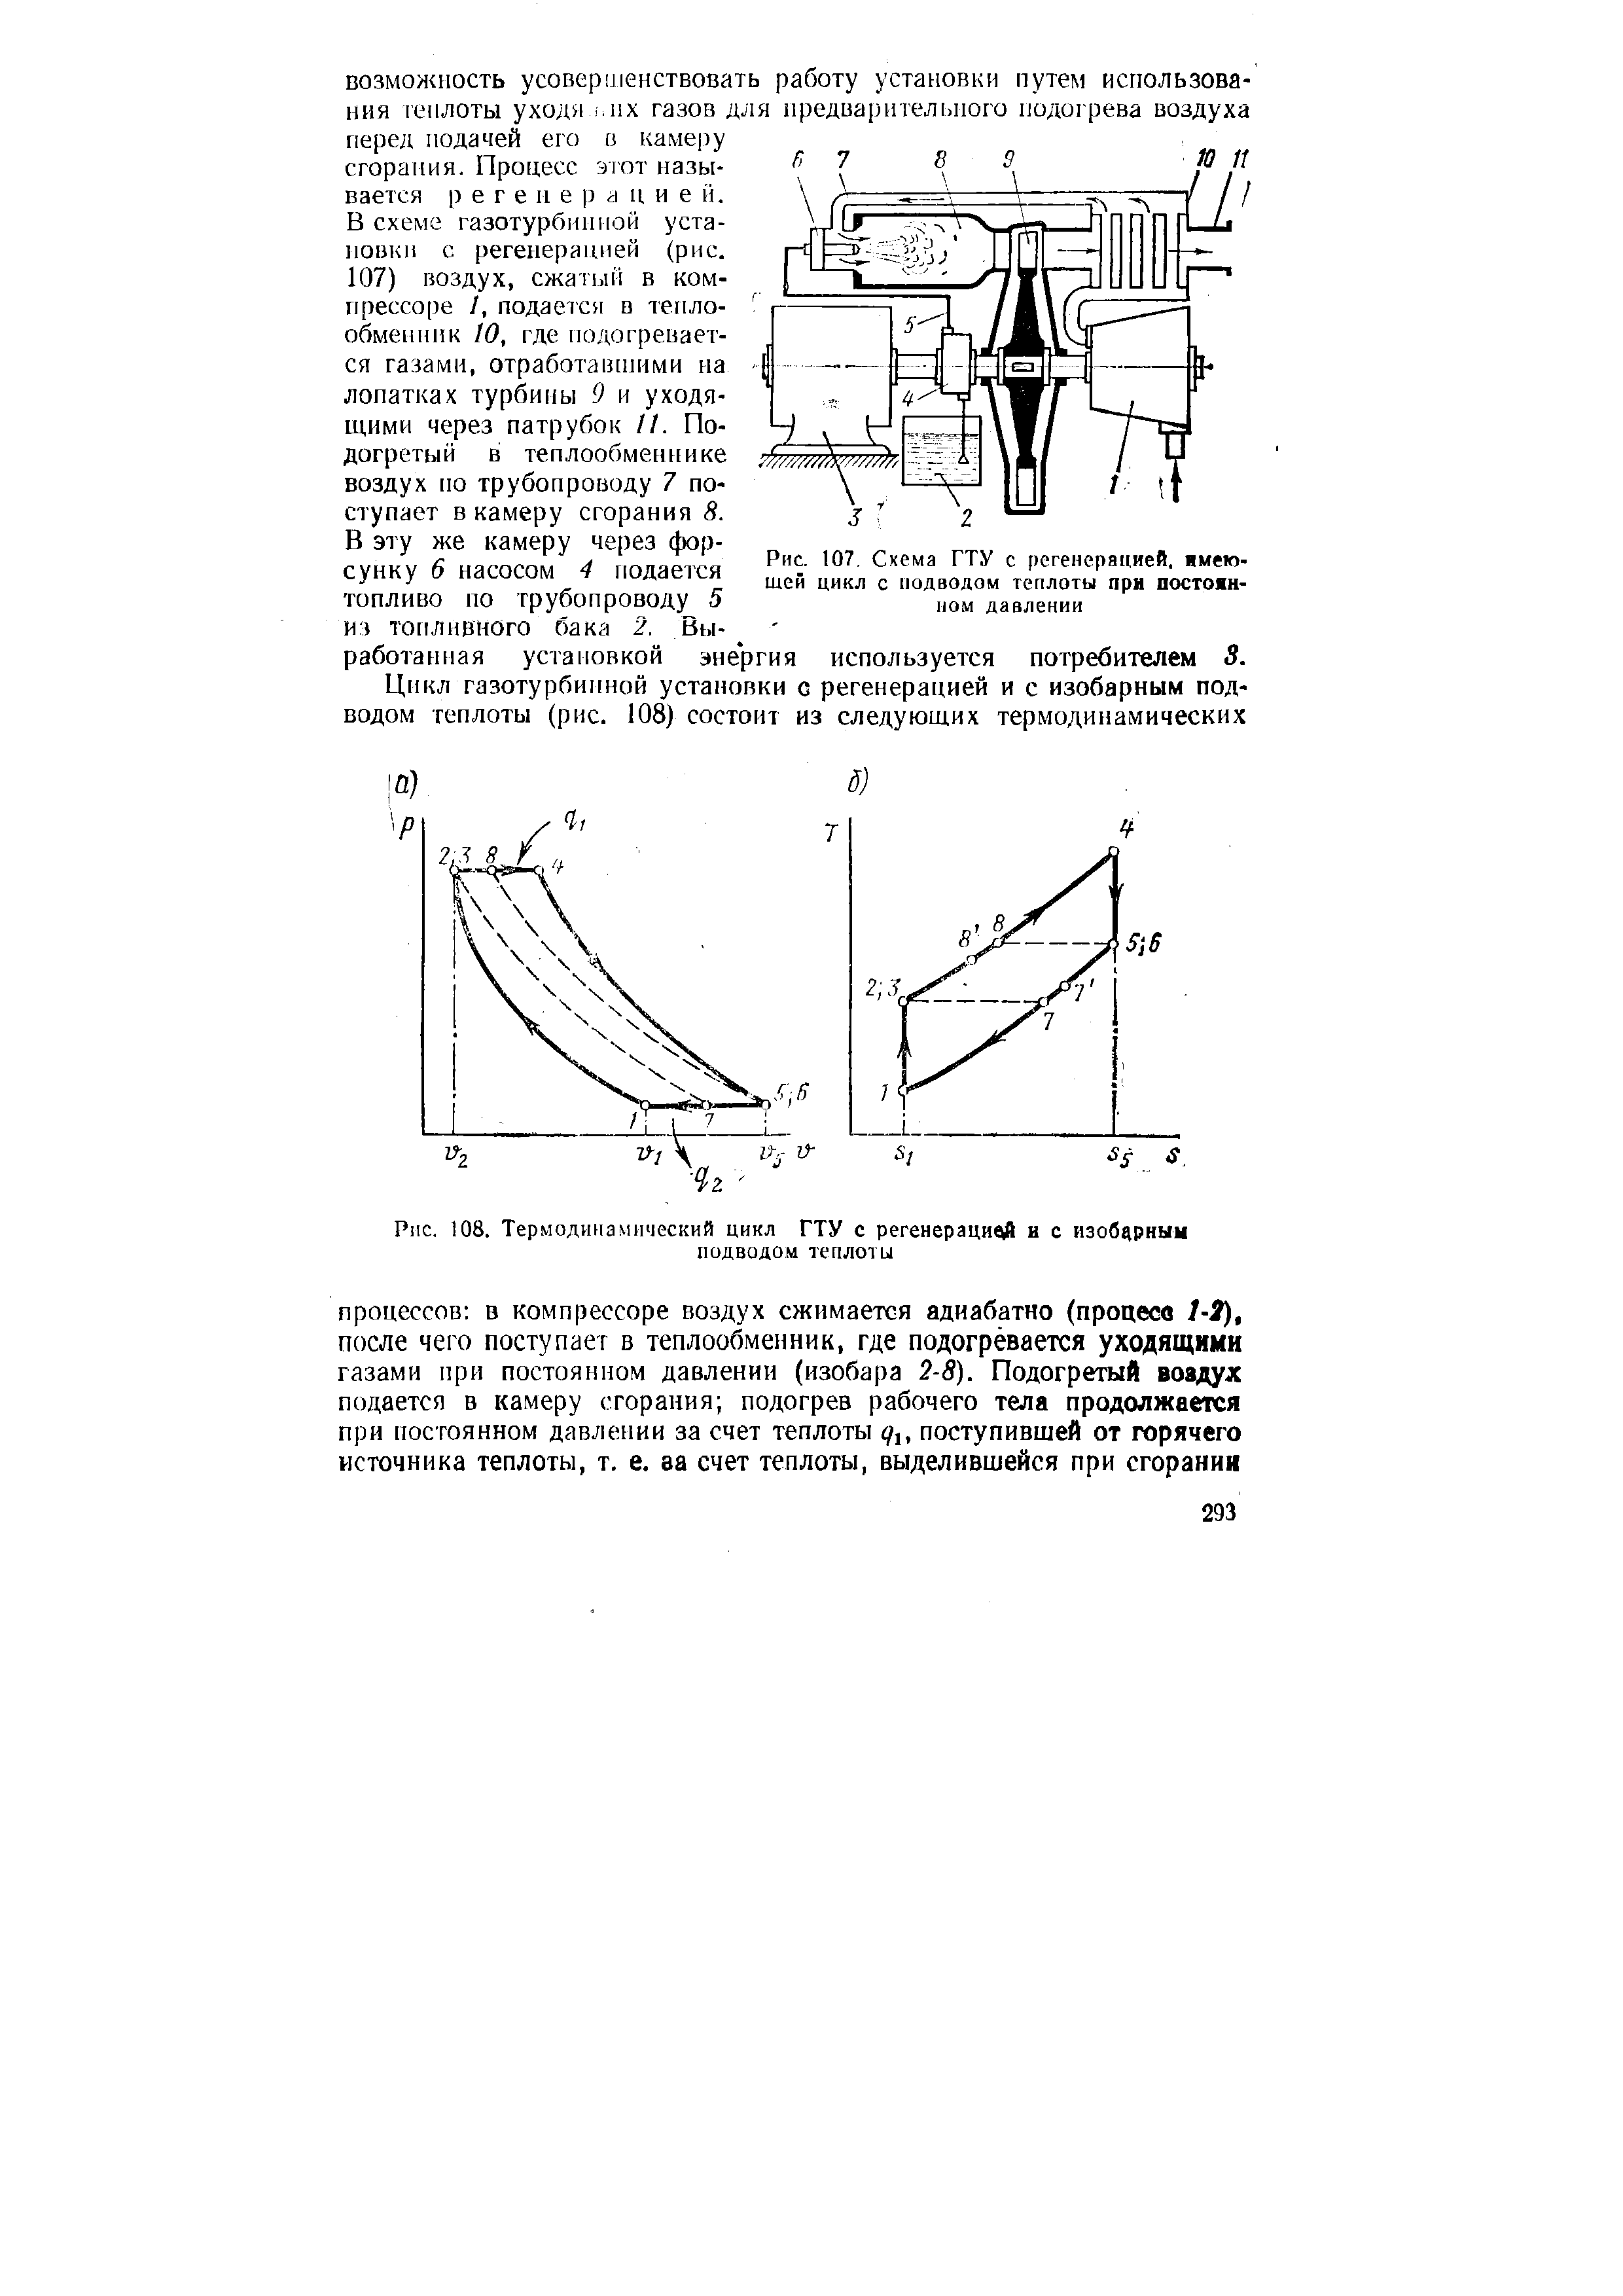 Рис. 107. Схема ГТУ с регенерацией, имеющей цикл с подводом теплоты при постоянном давлении
